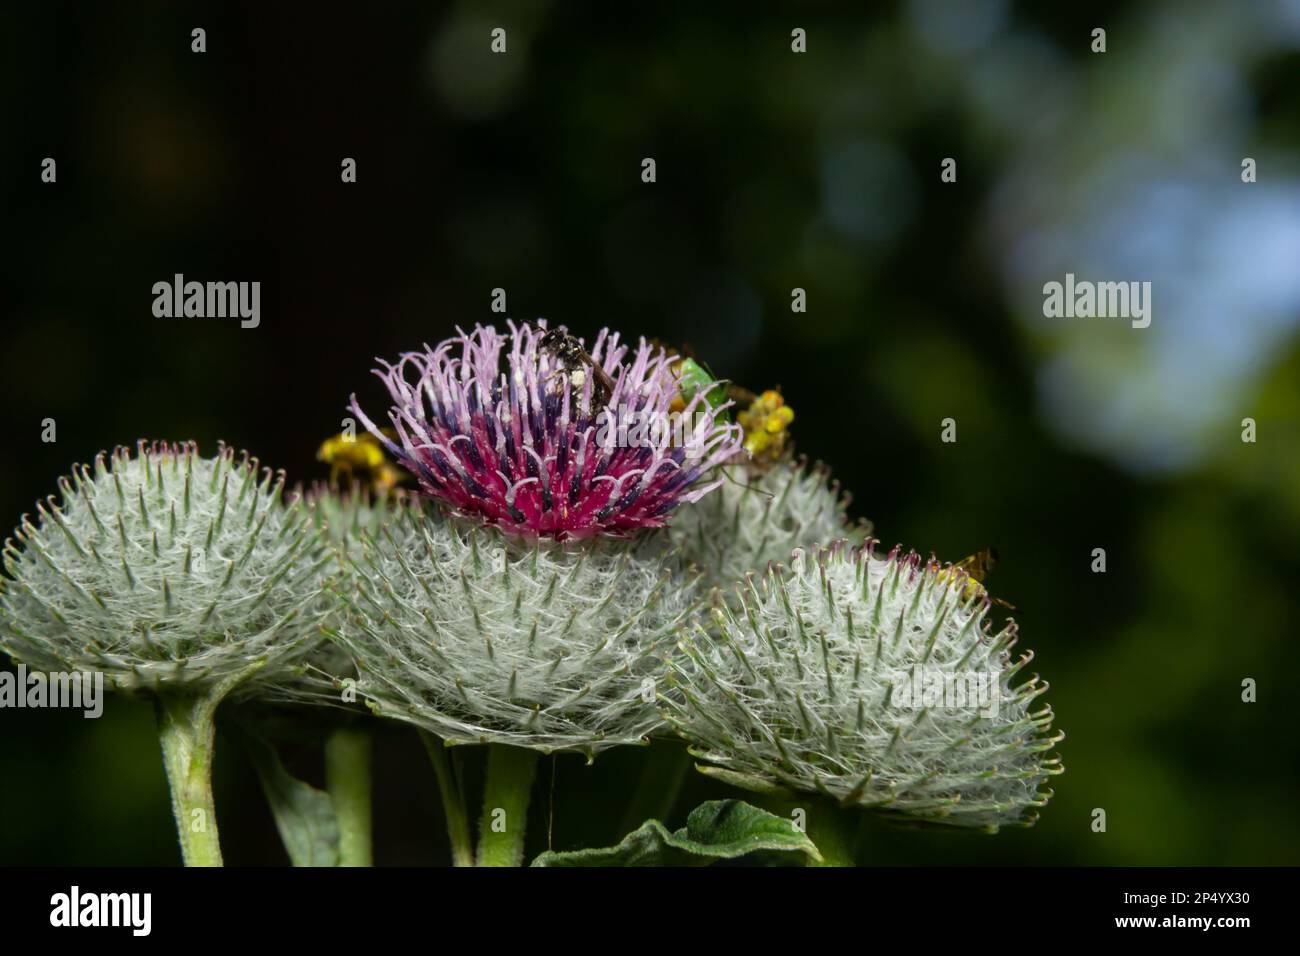 L'artium tomentosum, comunemente noto come burdock lanoso o burdock discendente, è una specie di burdock appartenente alla famiglia delle Asteraceae. Foto Stock